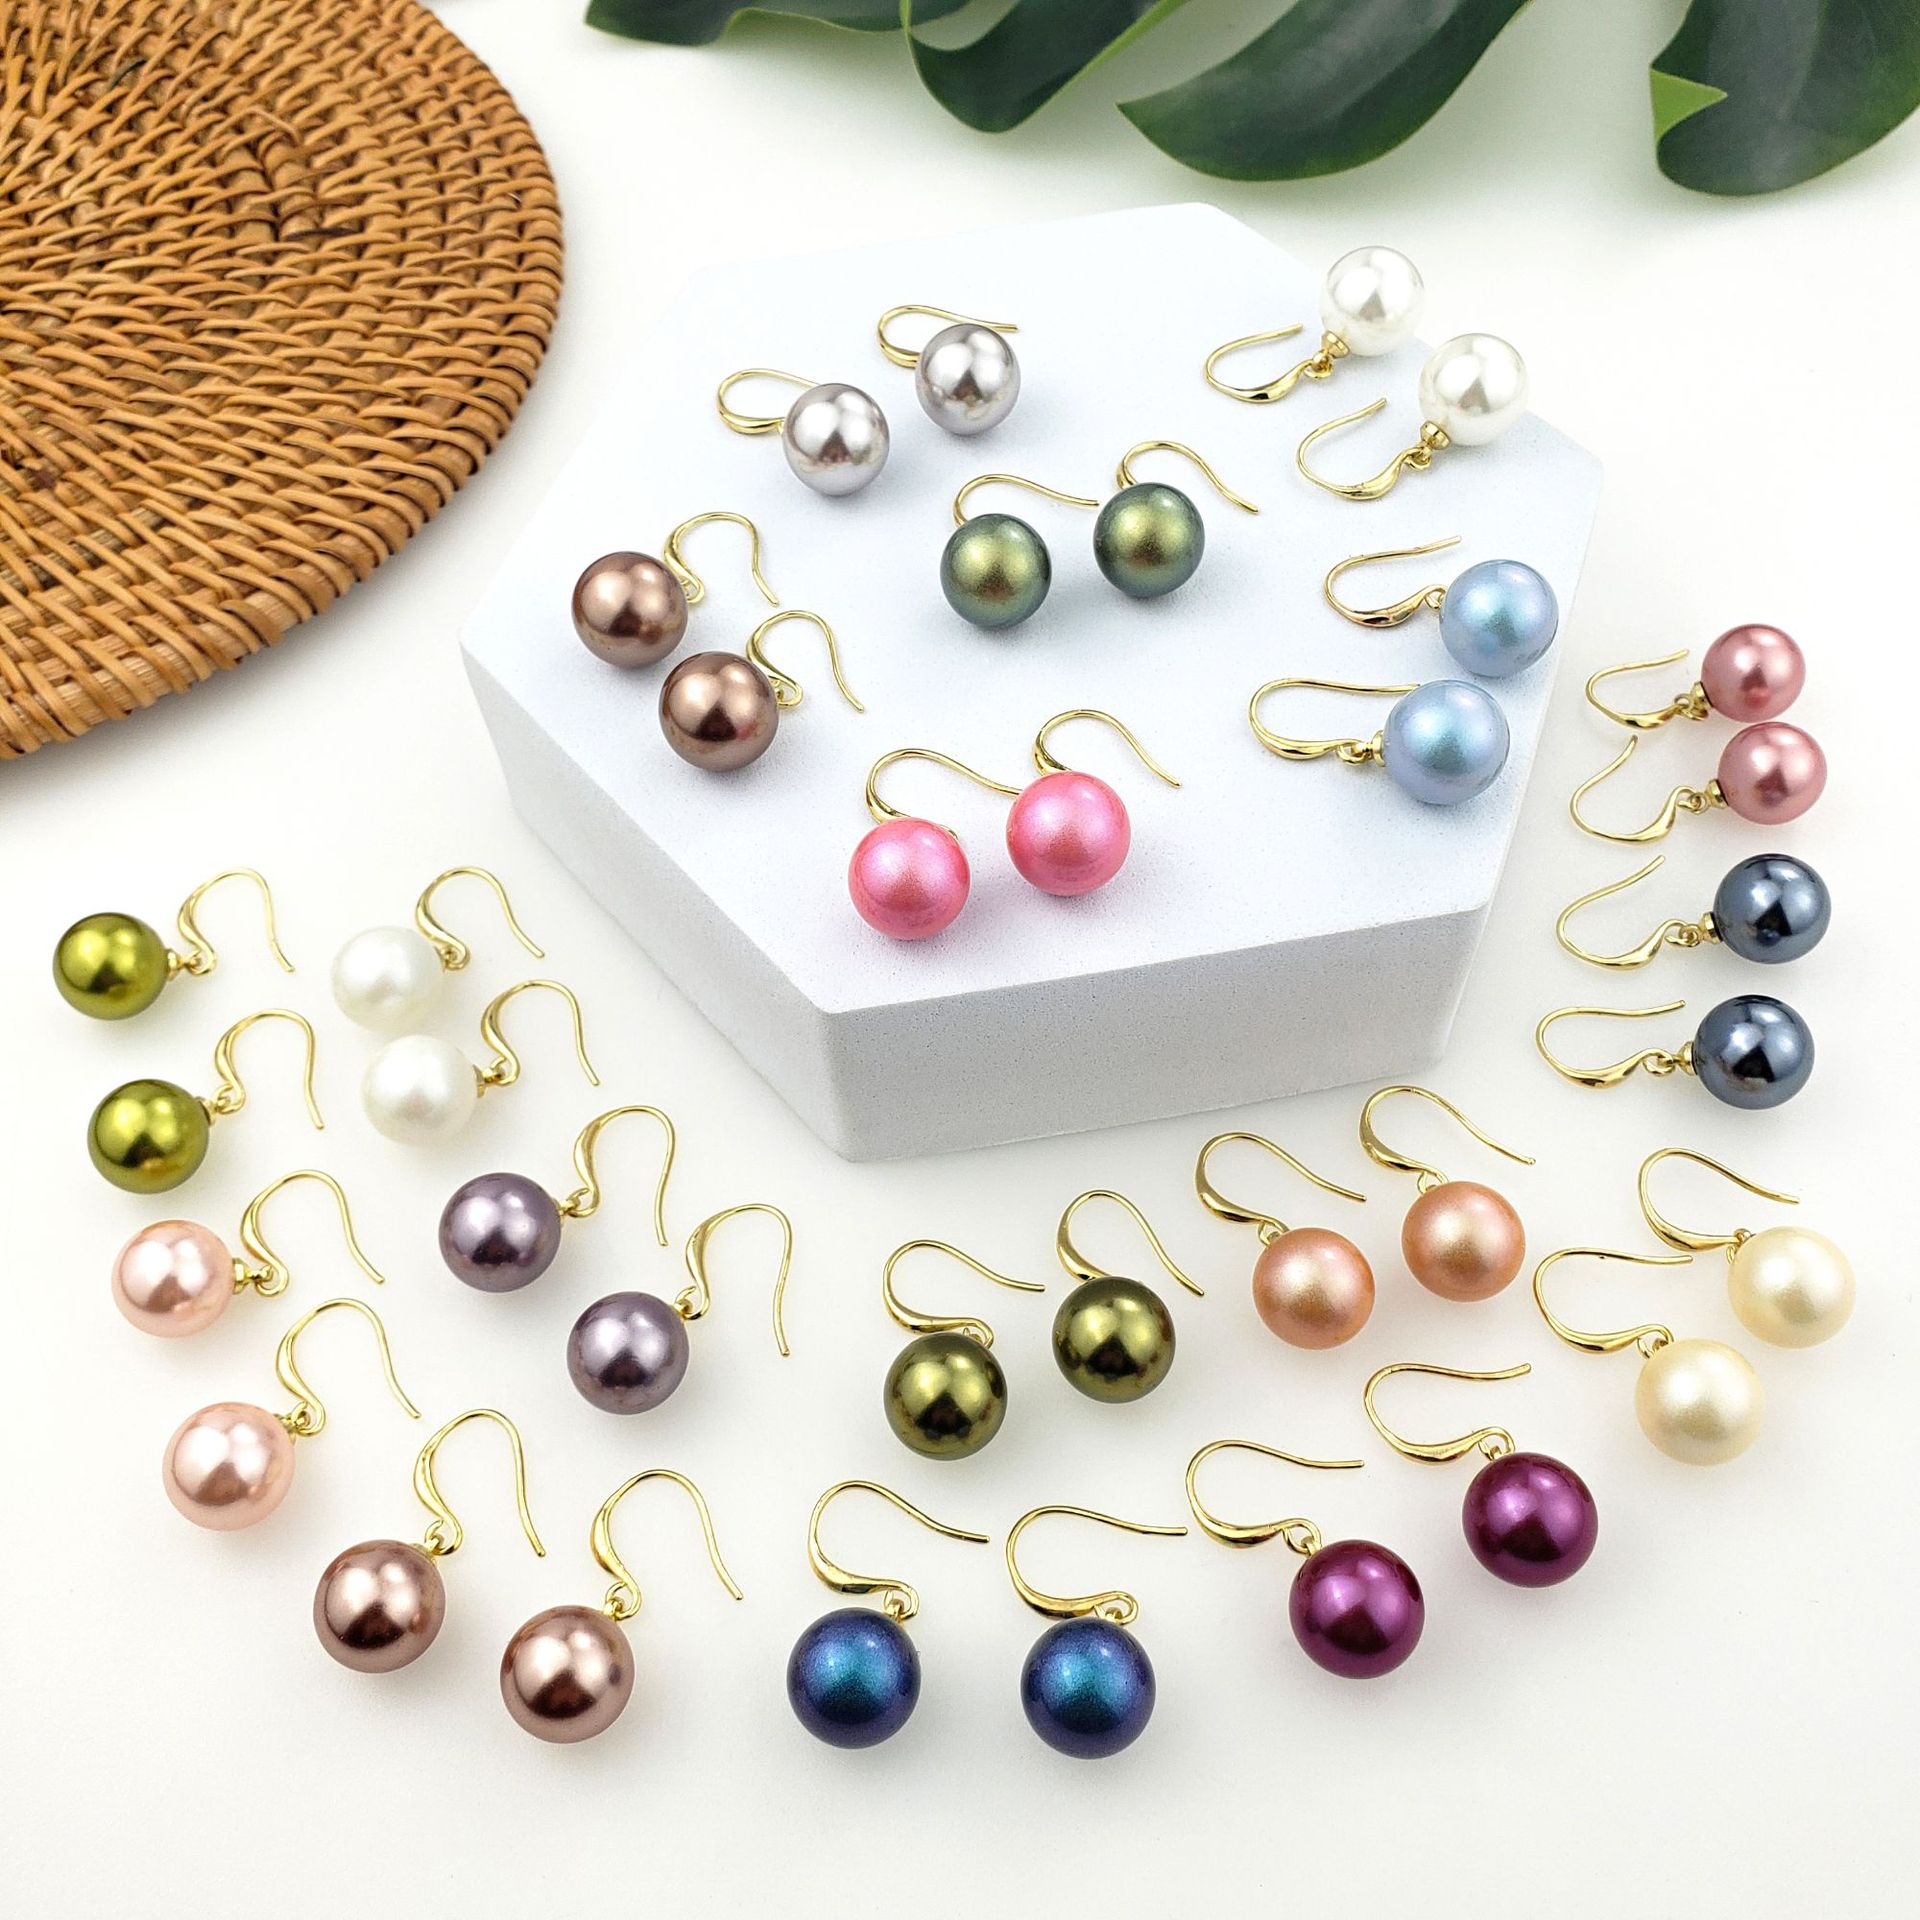 1 par de perlas chapadas en color sólido de estilo simple y elegante es una perla natural. Puede haber diferentes tamaños. Por favor, comprenda el gancho para la oreja de cobre.